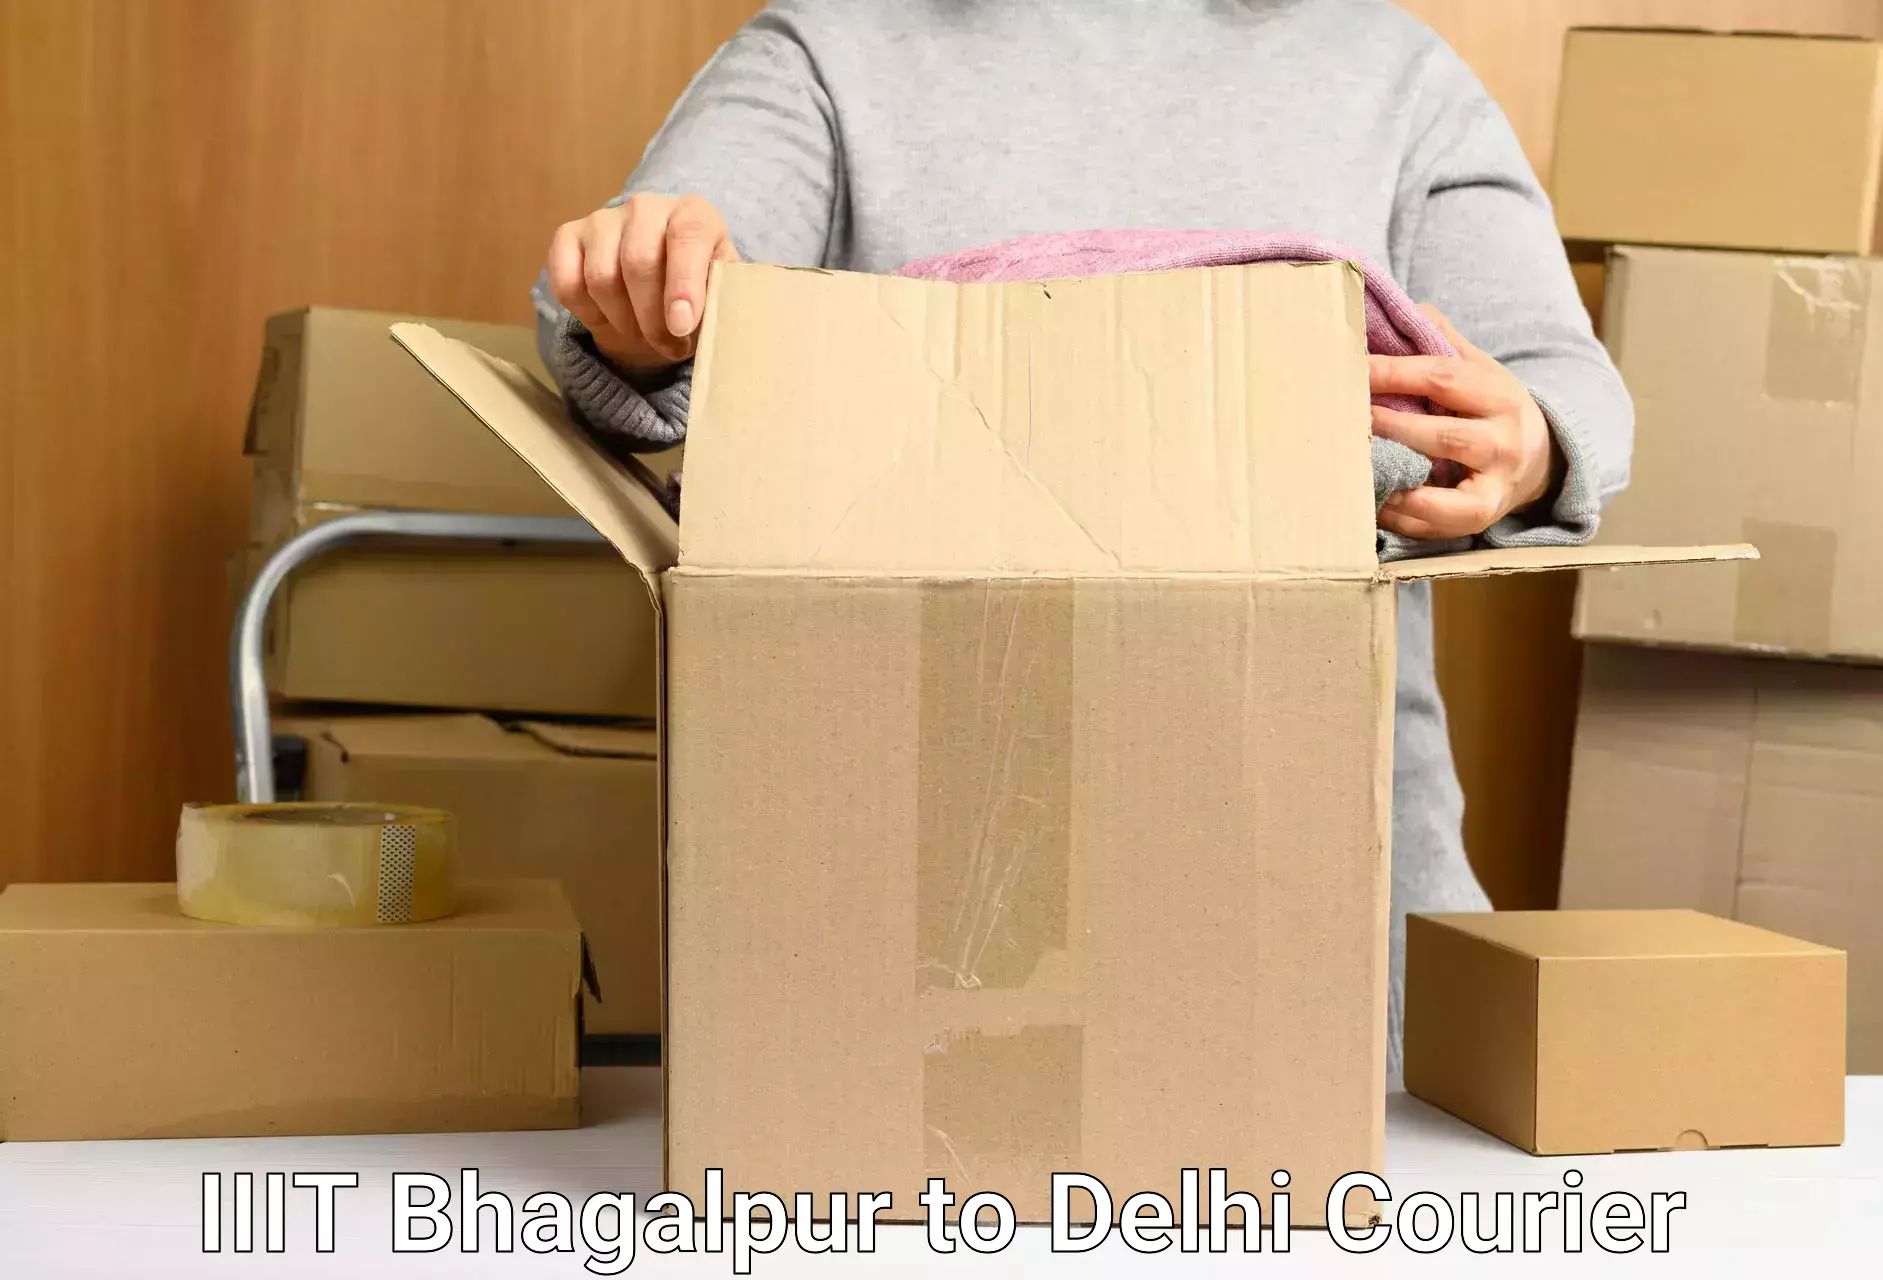 Efficient cargo services in IIIT Bhagalpur to IIT Delhi